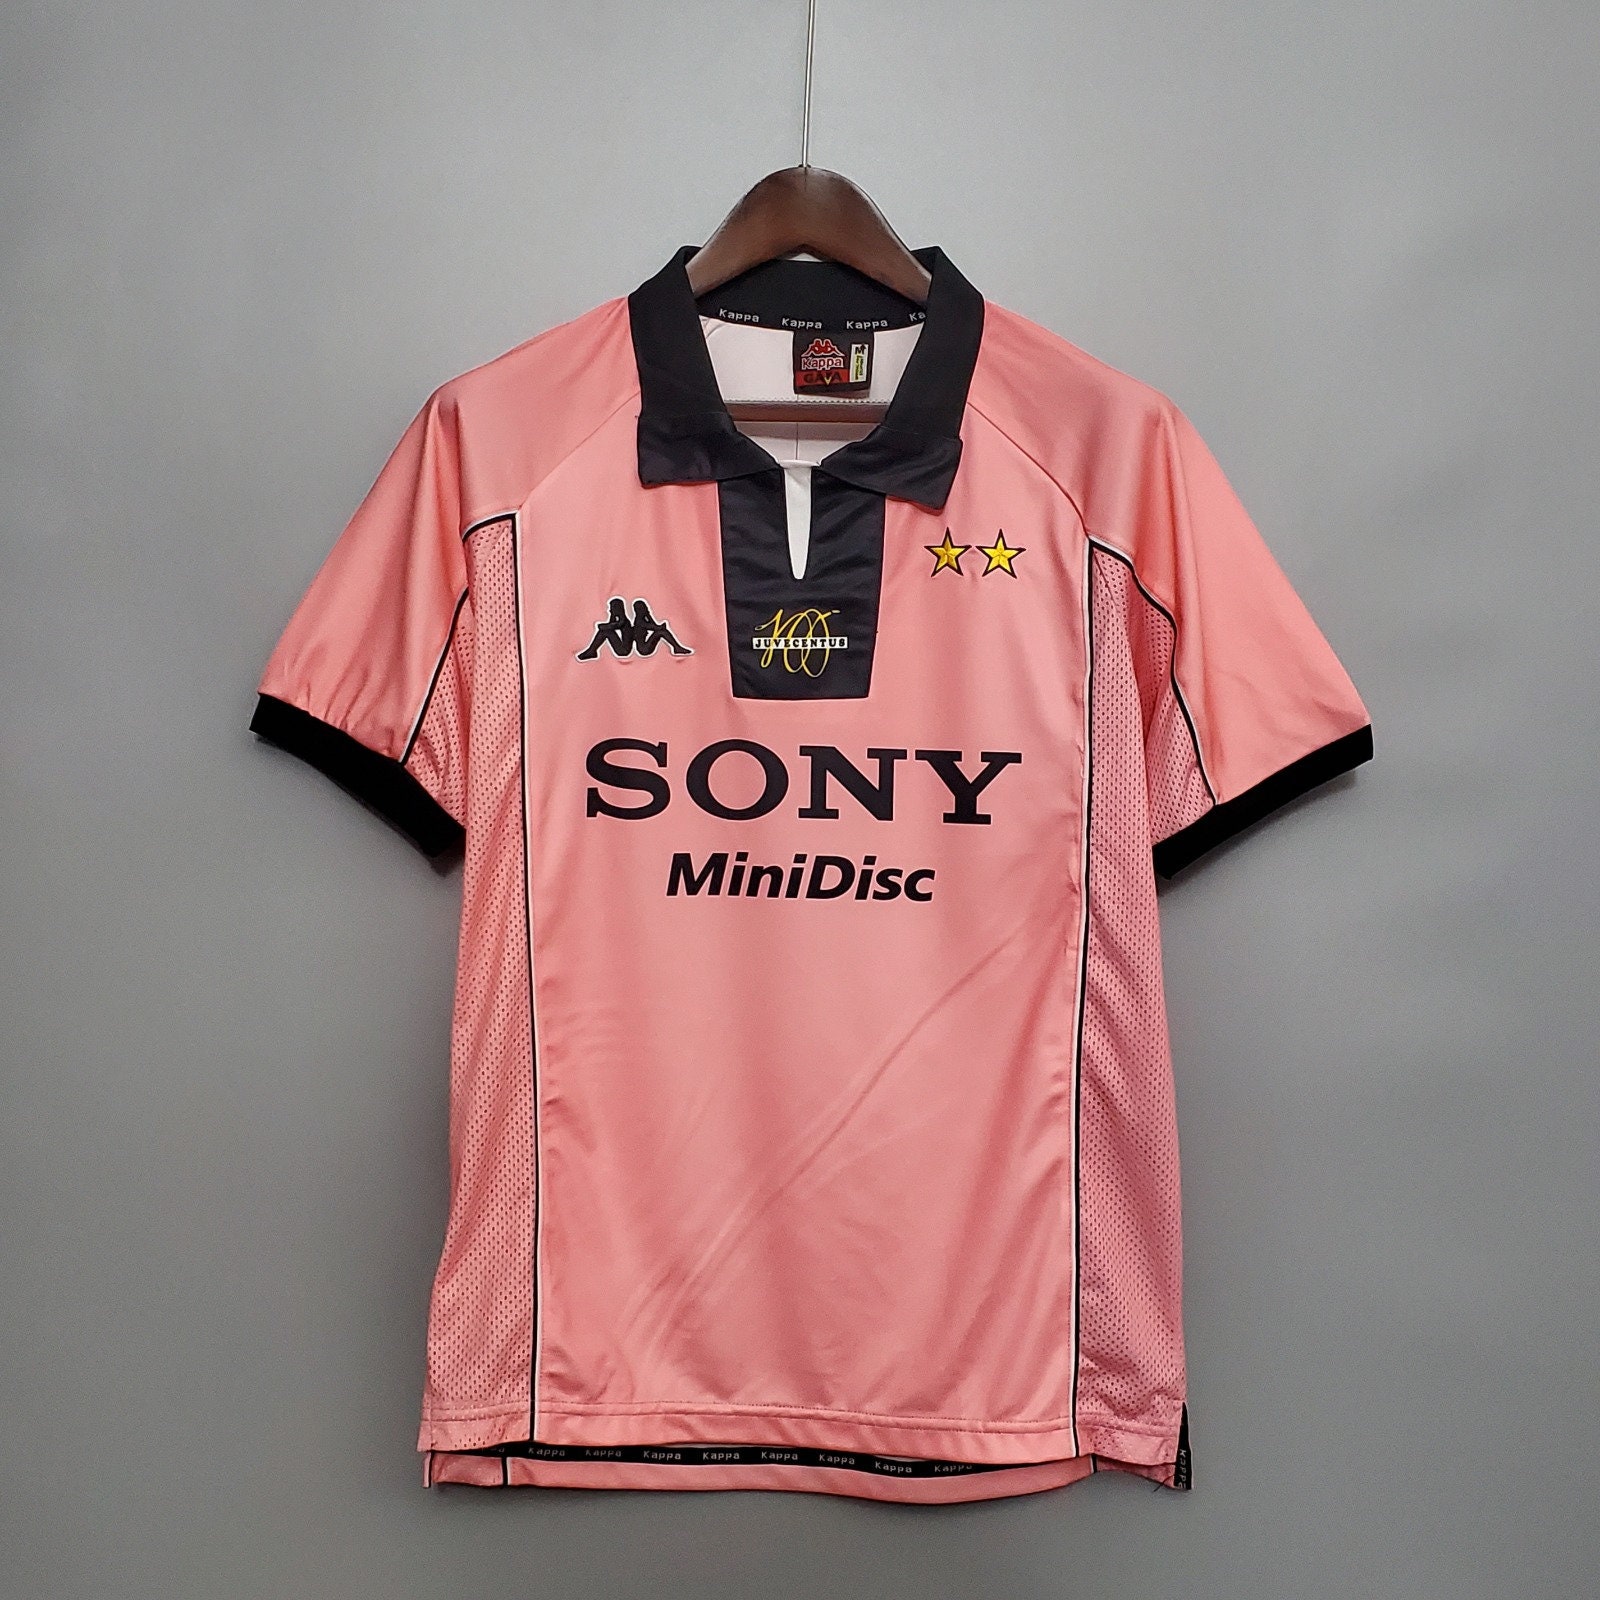 Snor Gewond raken Lotsbestemming Juventus Pink Jersey - Etsy